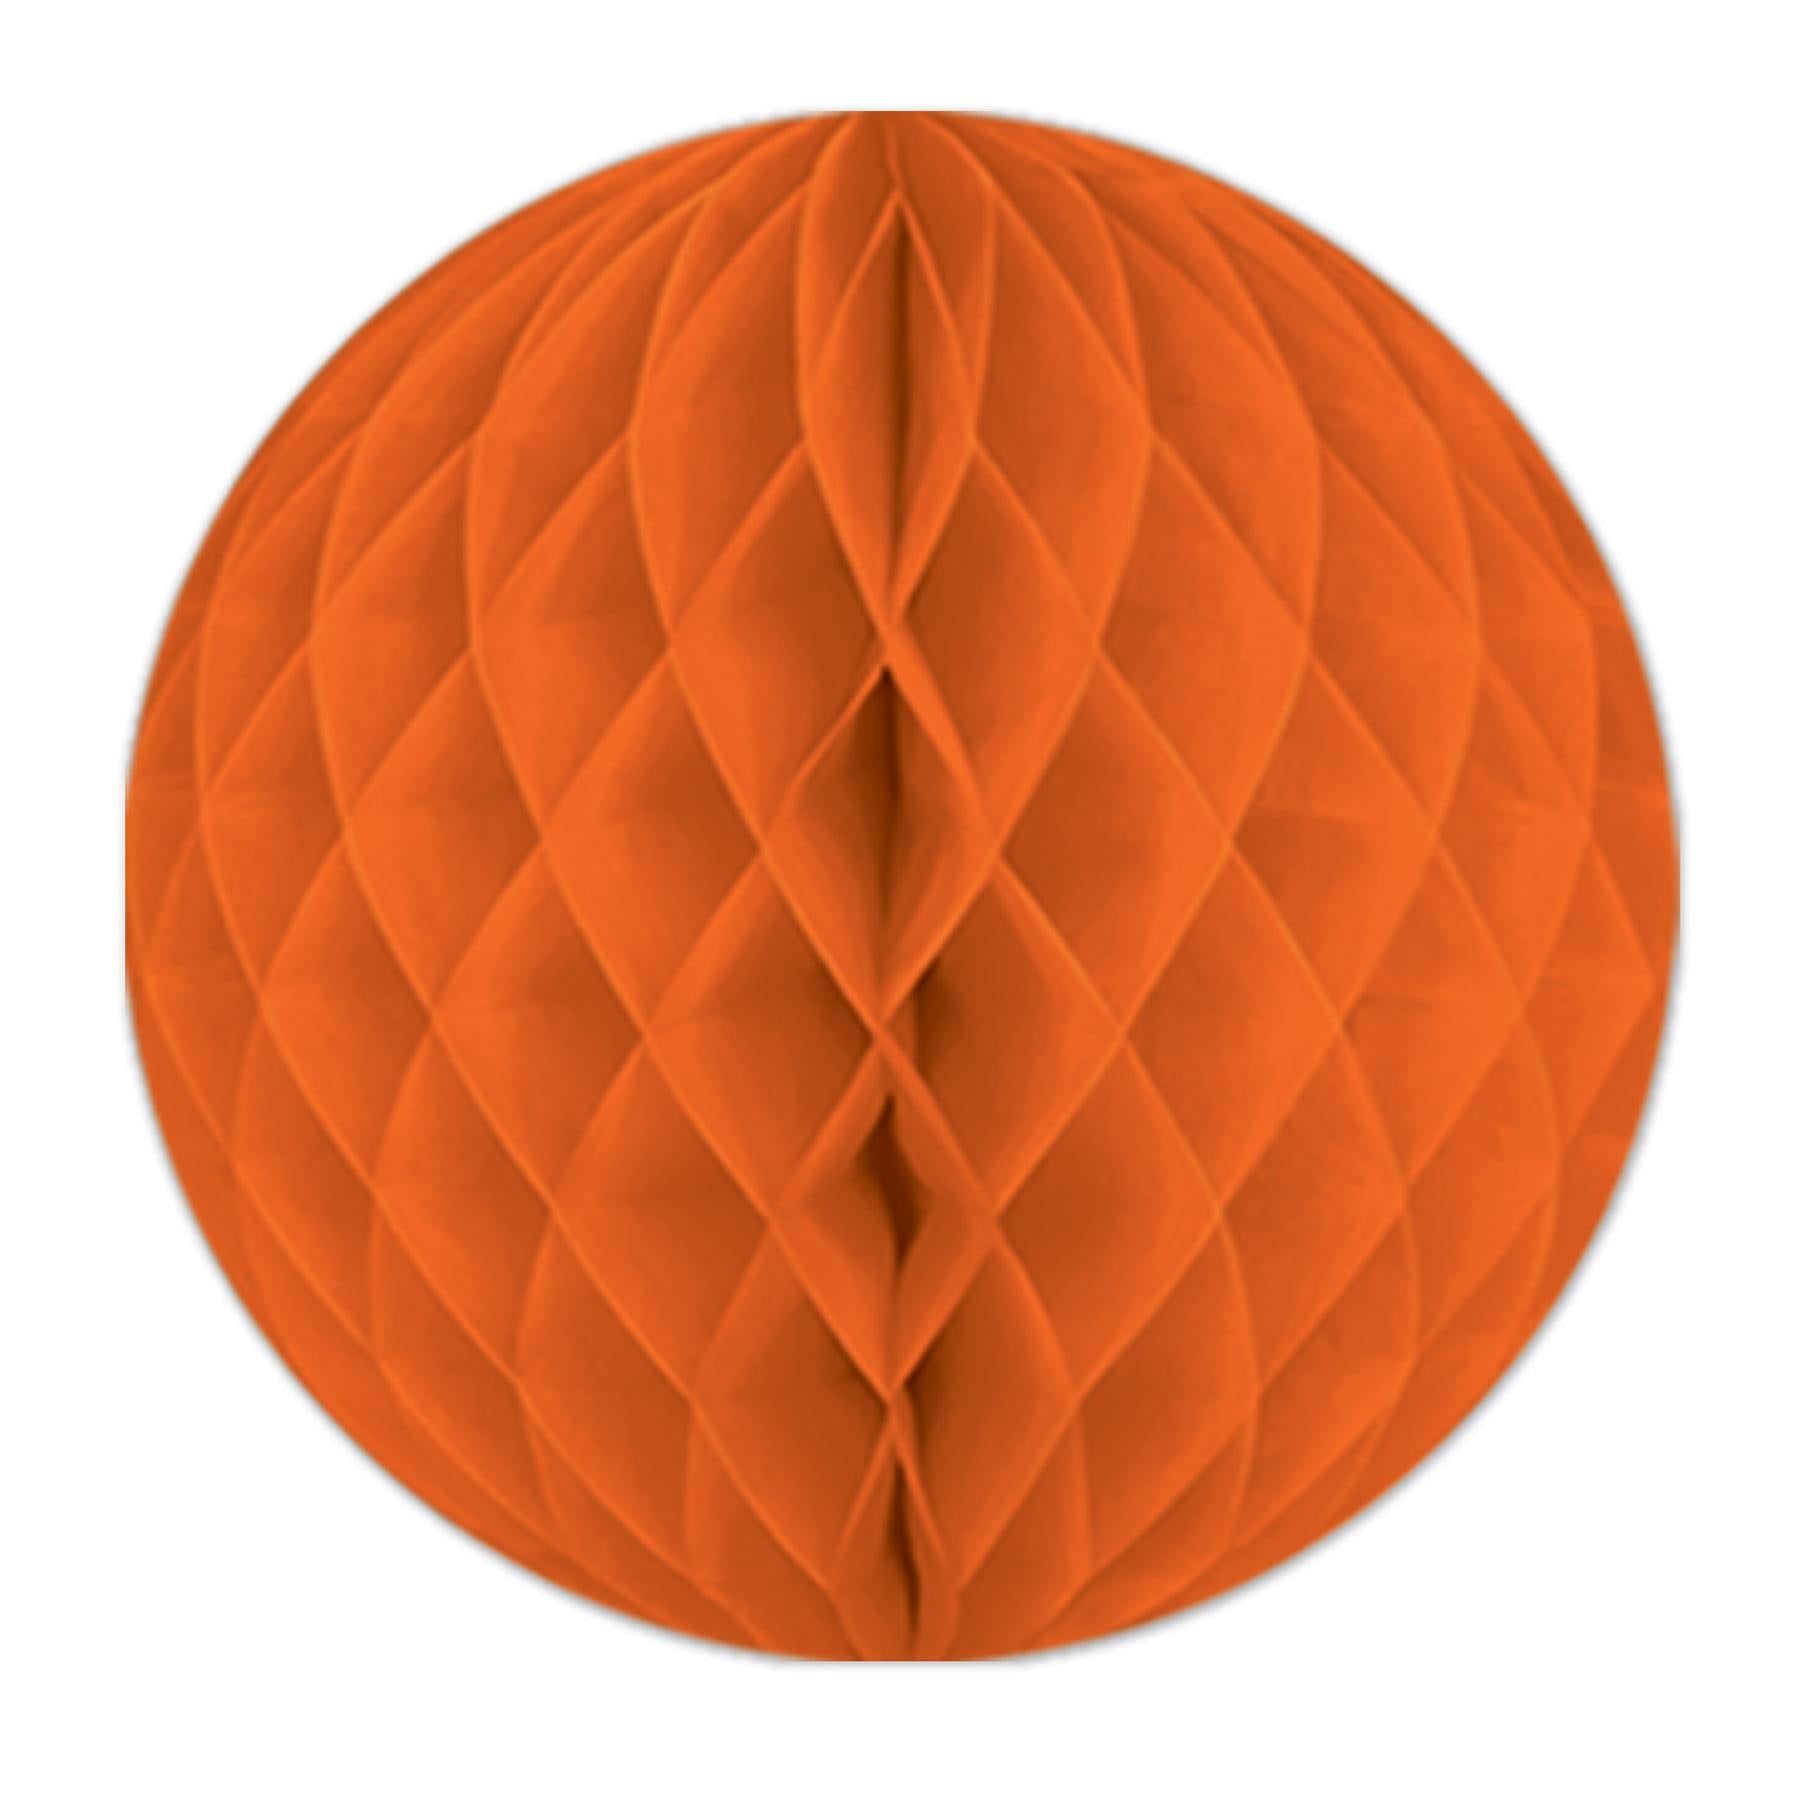 Beistle Party Tissue Ball - orange